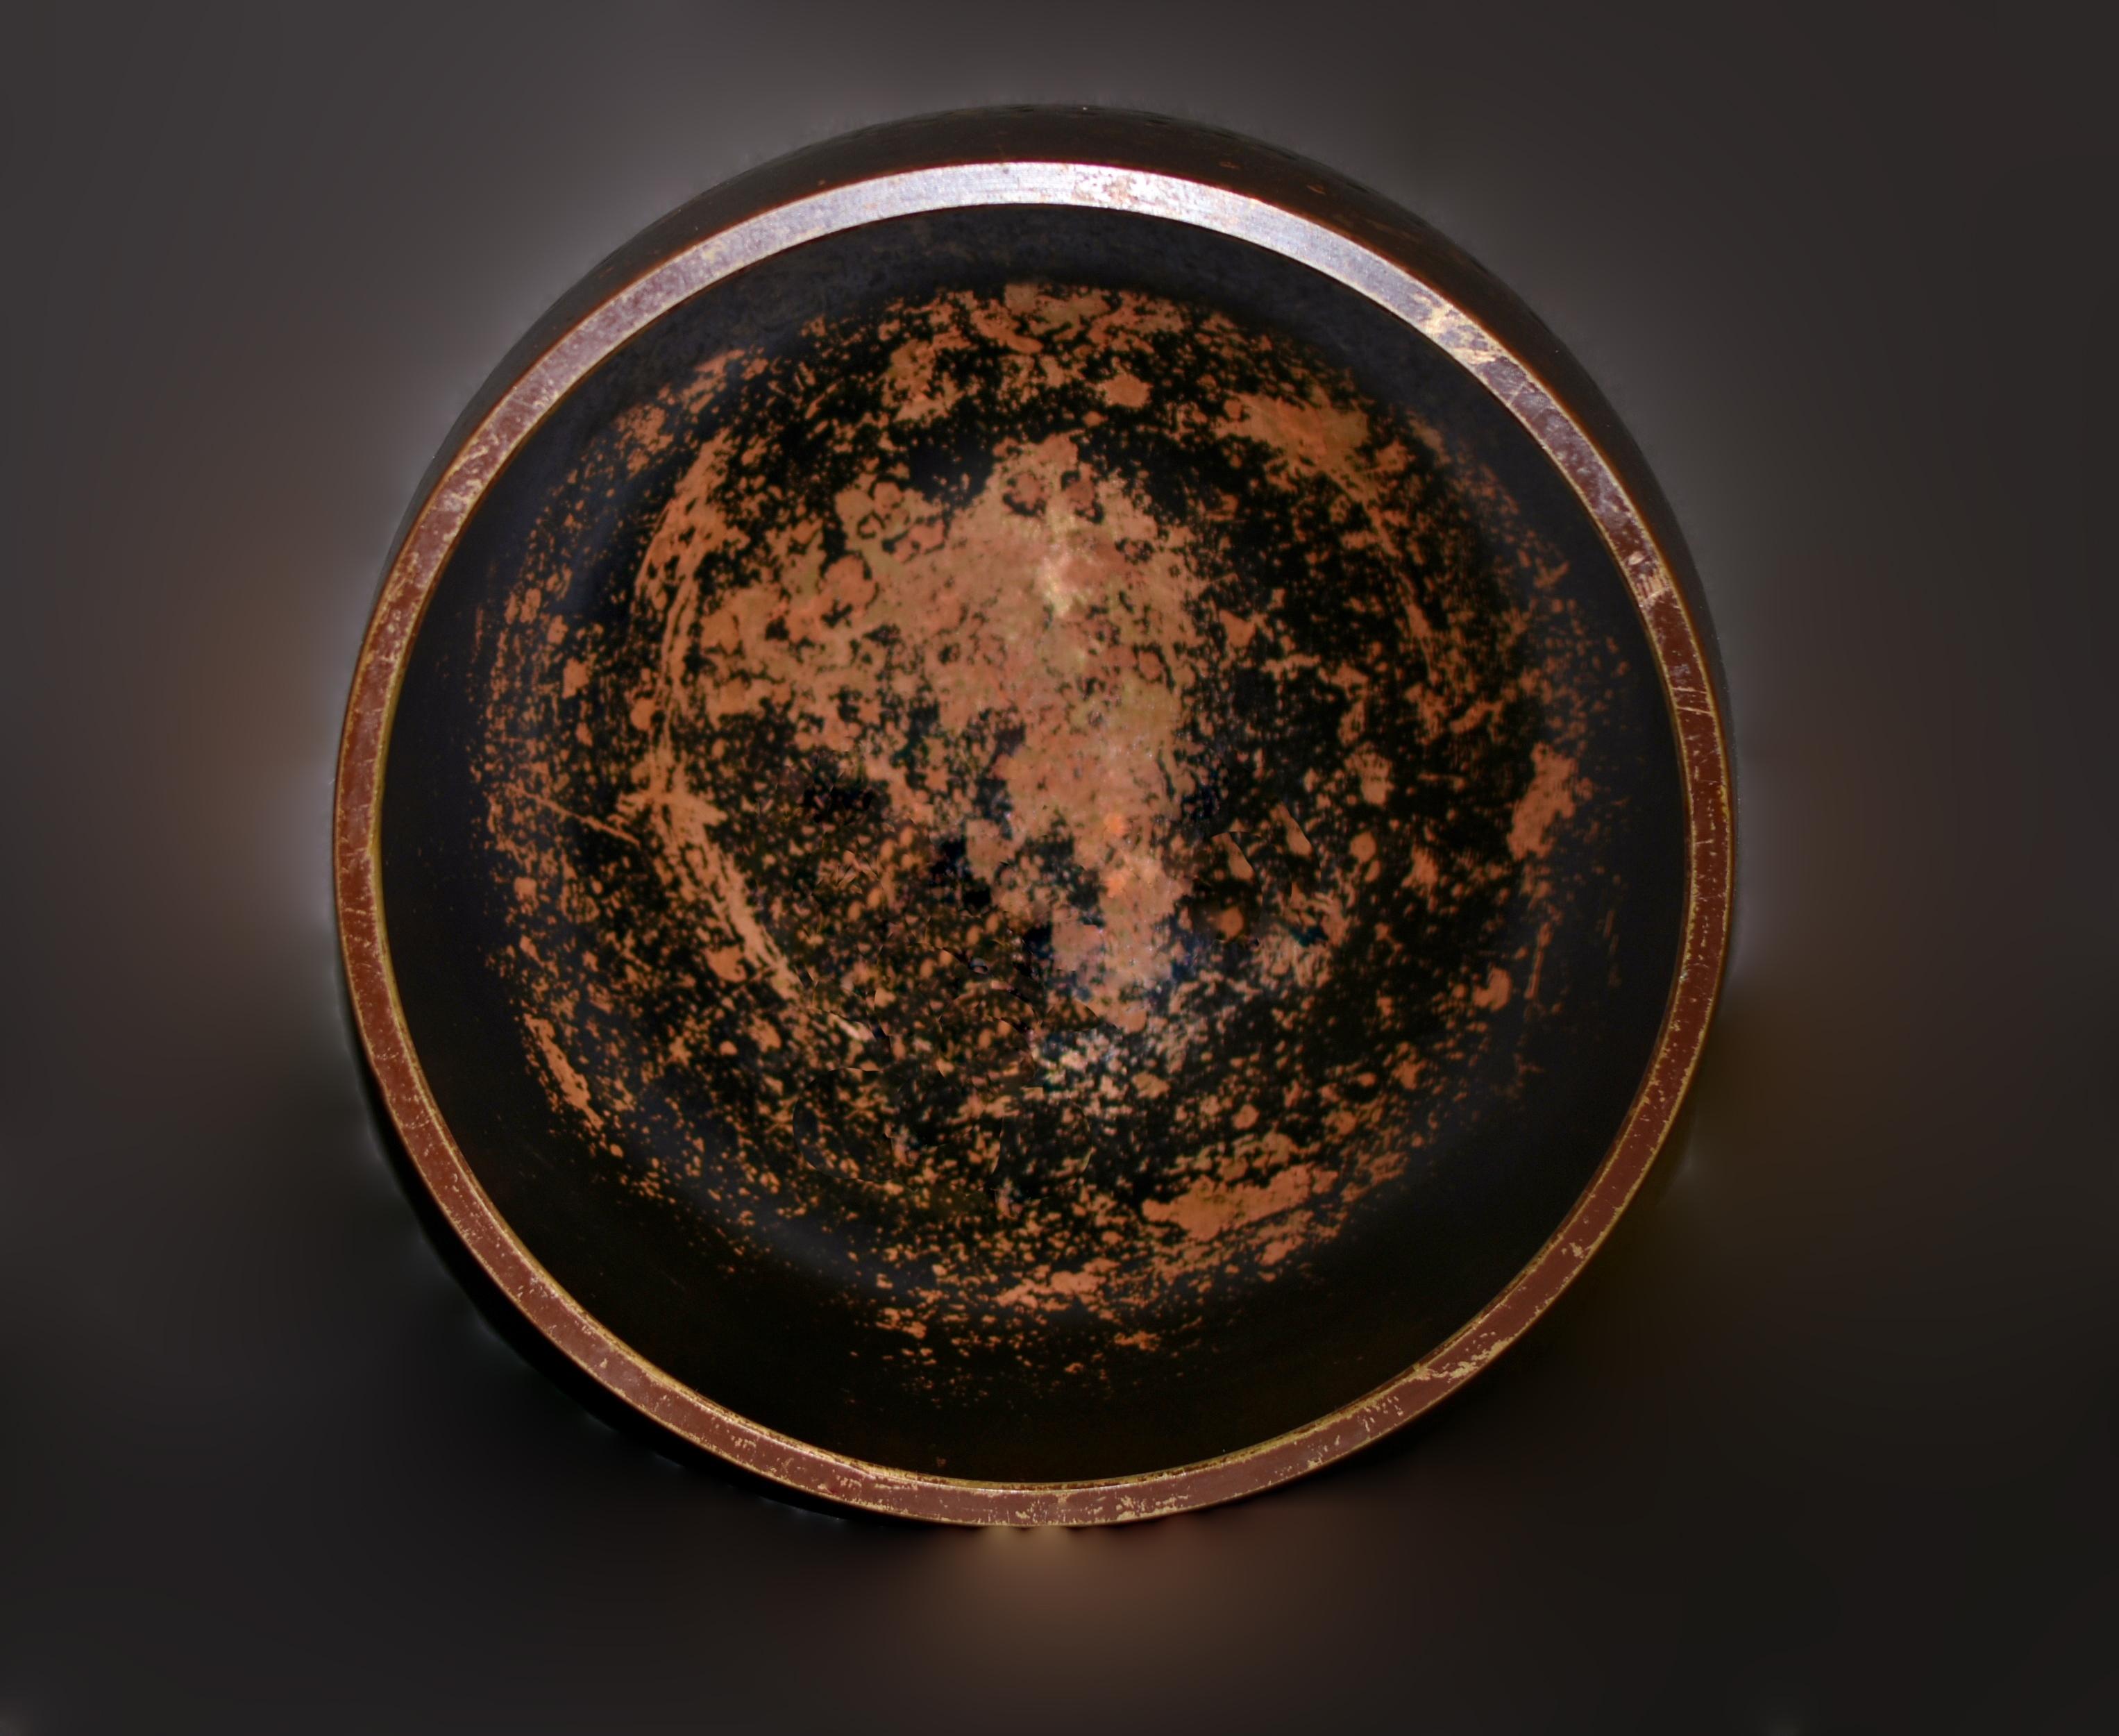 Un important bol chantant japonais ancien, fabriqué en bronze massif et pesant 8,7 livres. L'intérieur, de couleur or rose, contraste avec les extérieurs marron et noir, avec des bandes solides et des pointillés dorés martelés à la main, incarnant